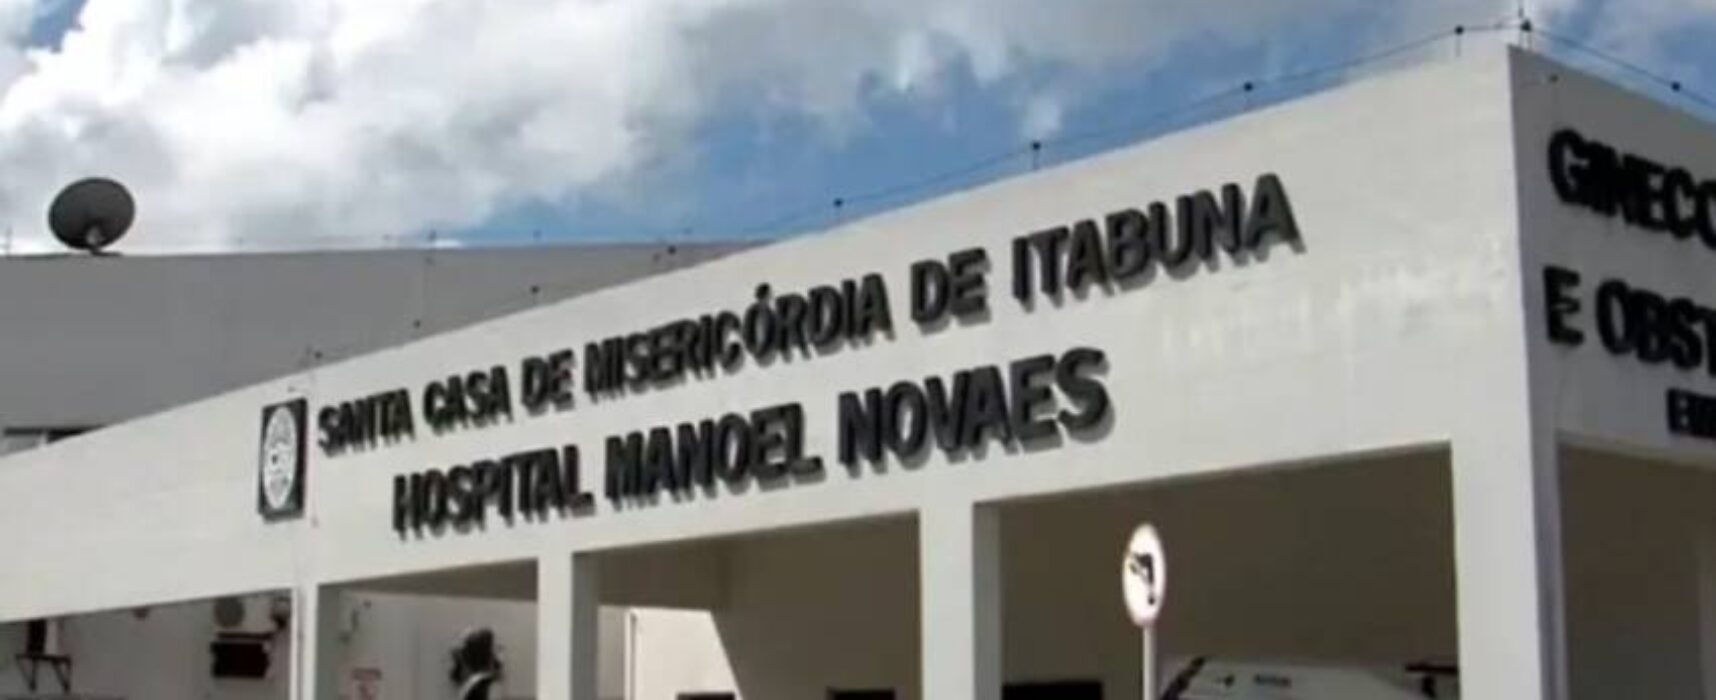 Justiça condena Santa Casa de Misericórdia em Itabuna em processo sobre jornada de trabalho